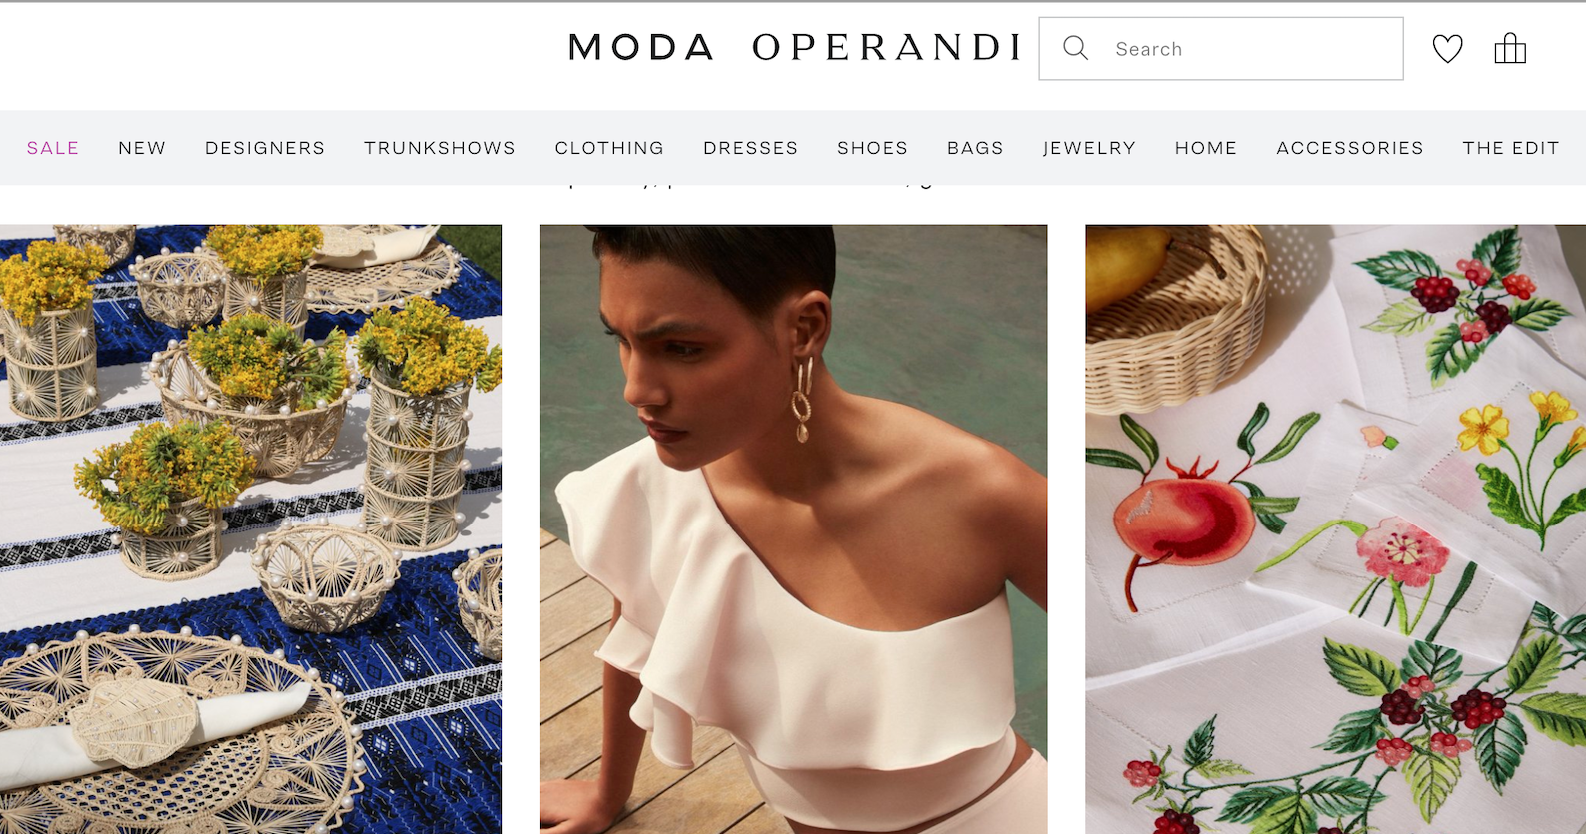 美国奢侈品电商 Moda Operandi 获1300万美元贷款，“重大增资”正在进行中